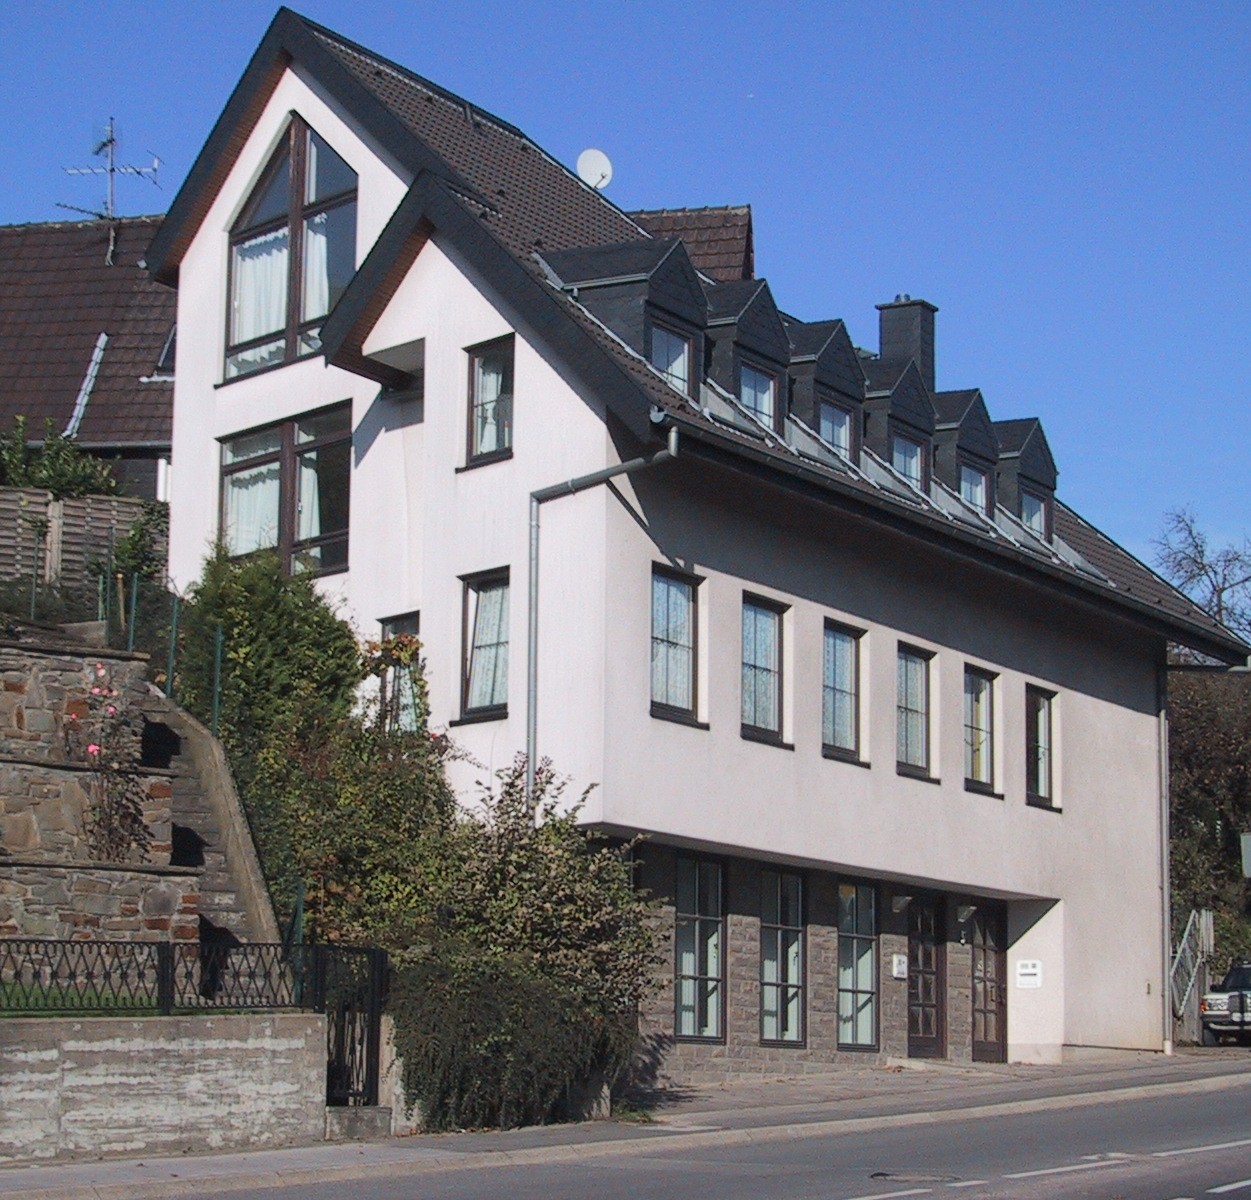 Individuelles Wohn- und Geschäftshaus nähe Schloss Bensberg